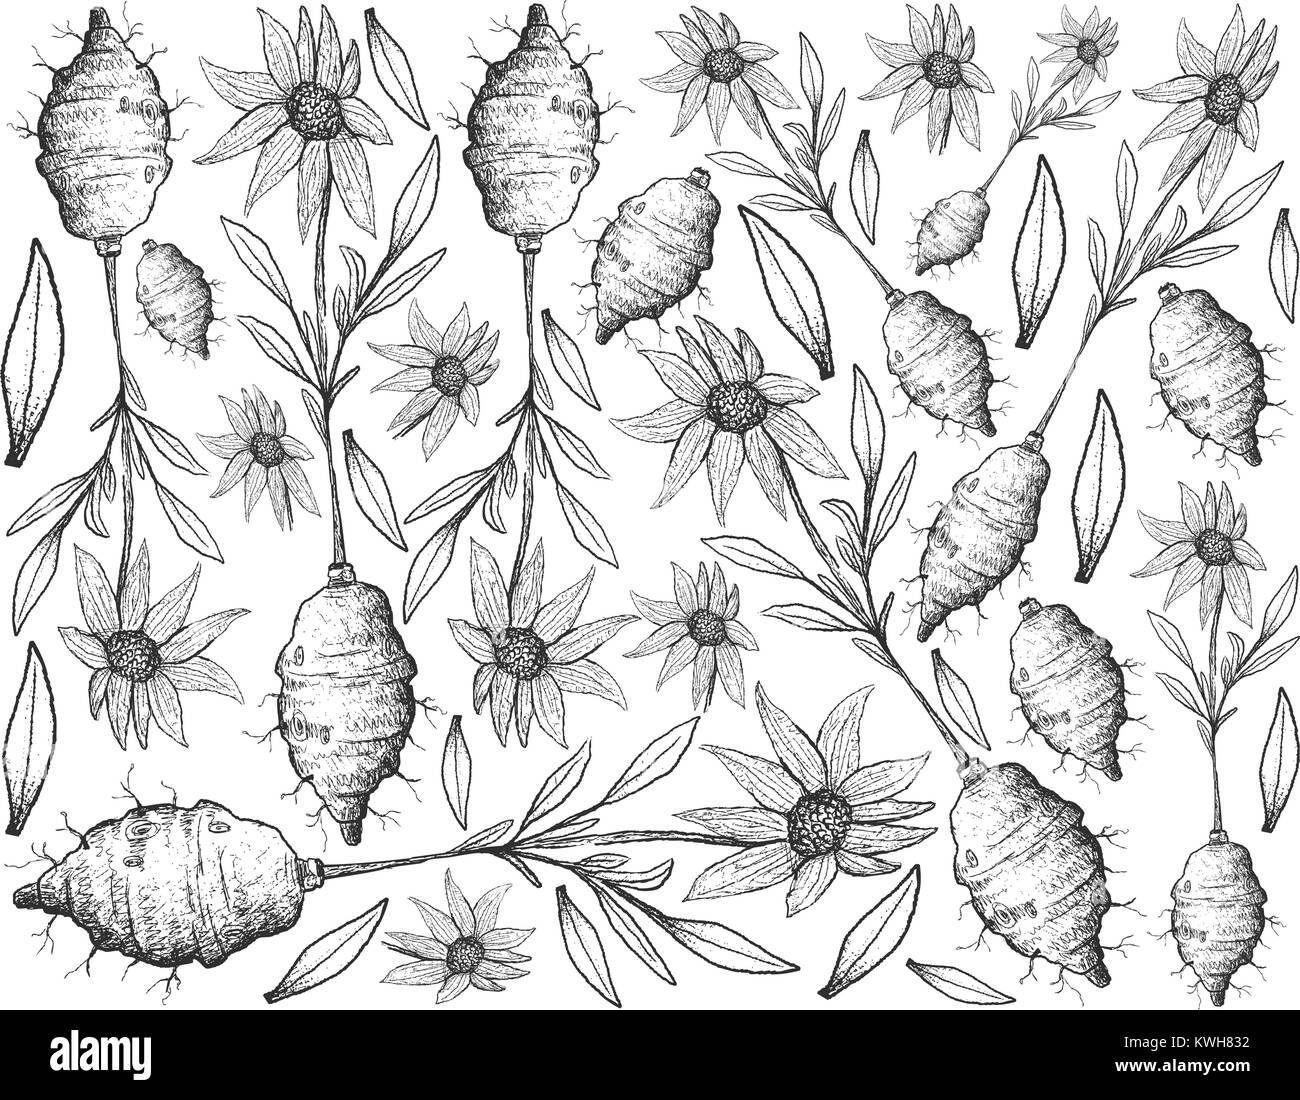 Root und knötchenförmige Gemüse, Illustration Hand gezeichnete Skizze von frischem Topinambur oder Helianthus tuberosus Pflanze isoliert auf weißem Hintergrund. Stock Vektor